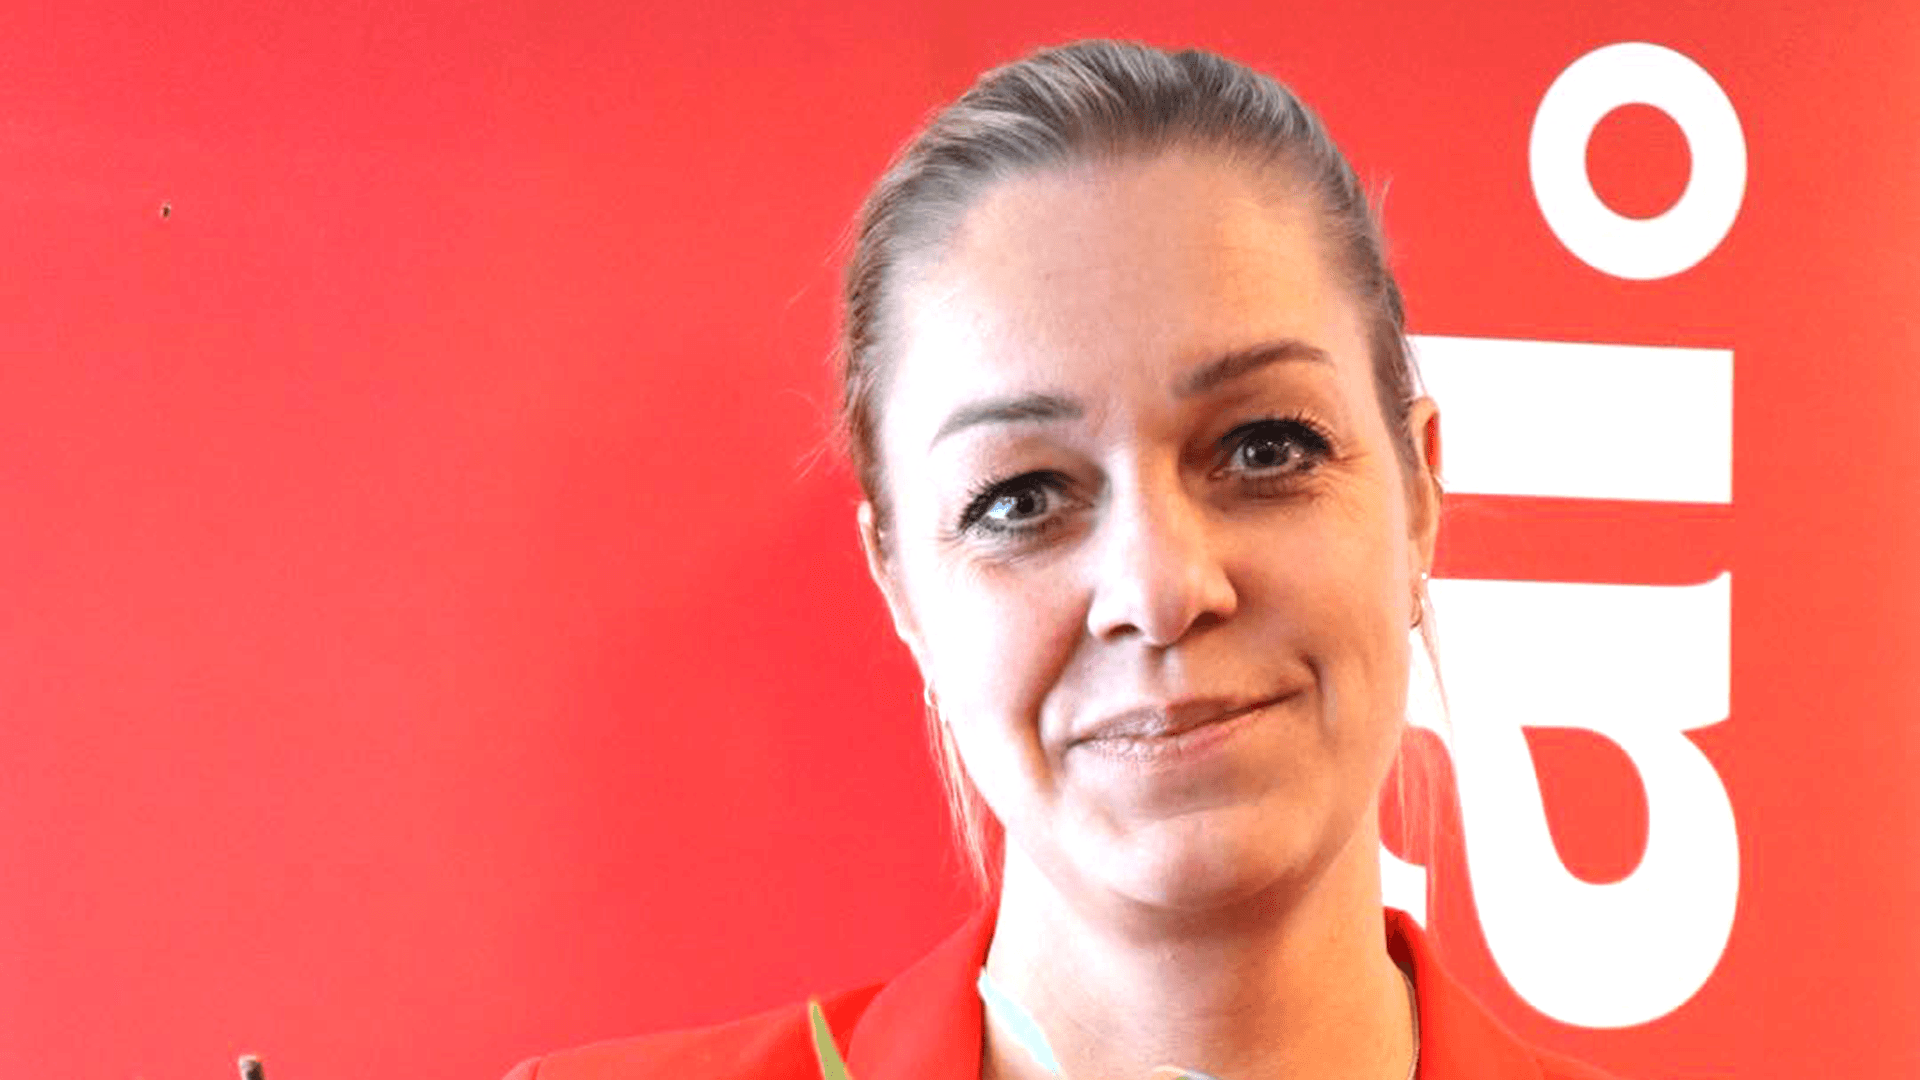 Karolina sundberg